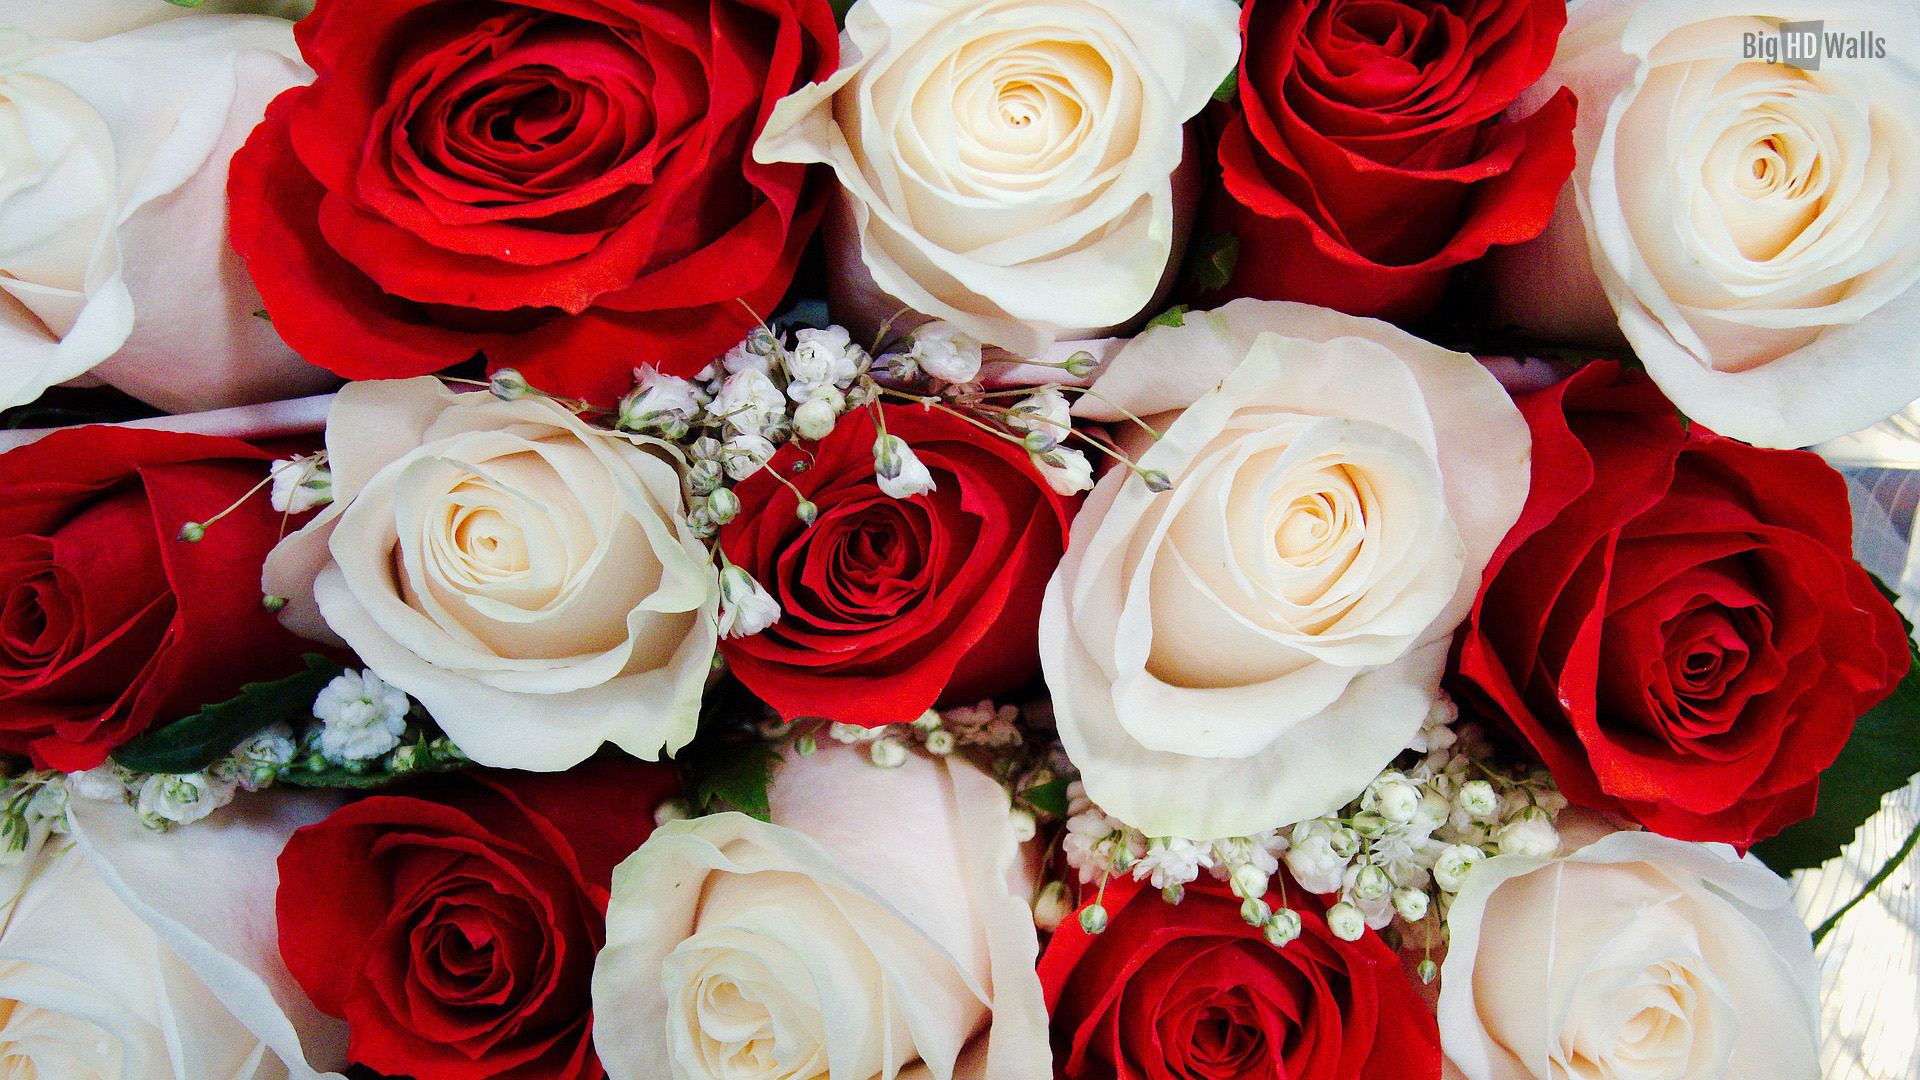 Bạn đang chuẩn bị cho đám cưới của mình? Bạn muốn tìm kiếm một hình nền hoa cưới đẹp để trang trí cho máy tính của mình? Đừng lo, tải miễn phí ngay hình nền hoa hồng cưới đẹp nhất dành riêng cho bạn!